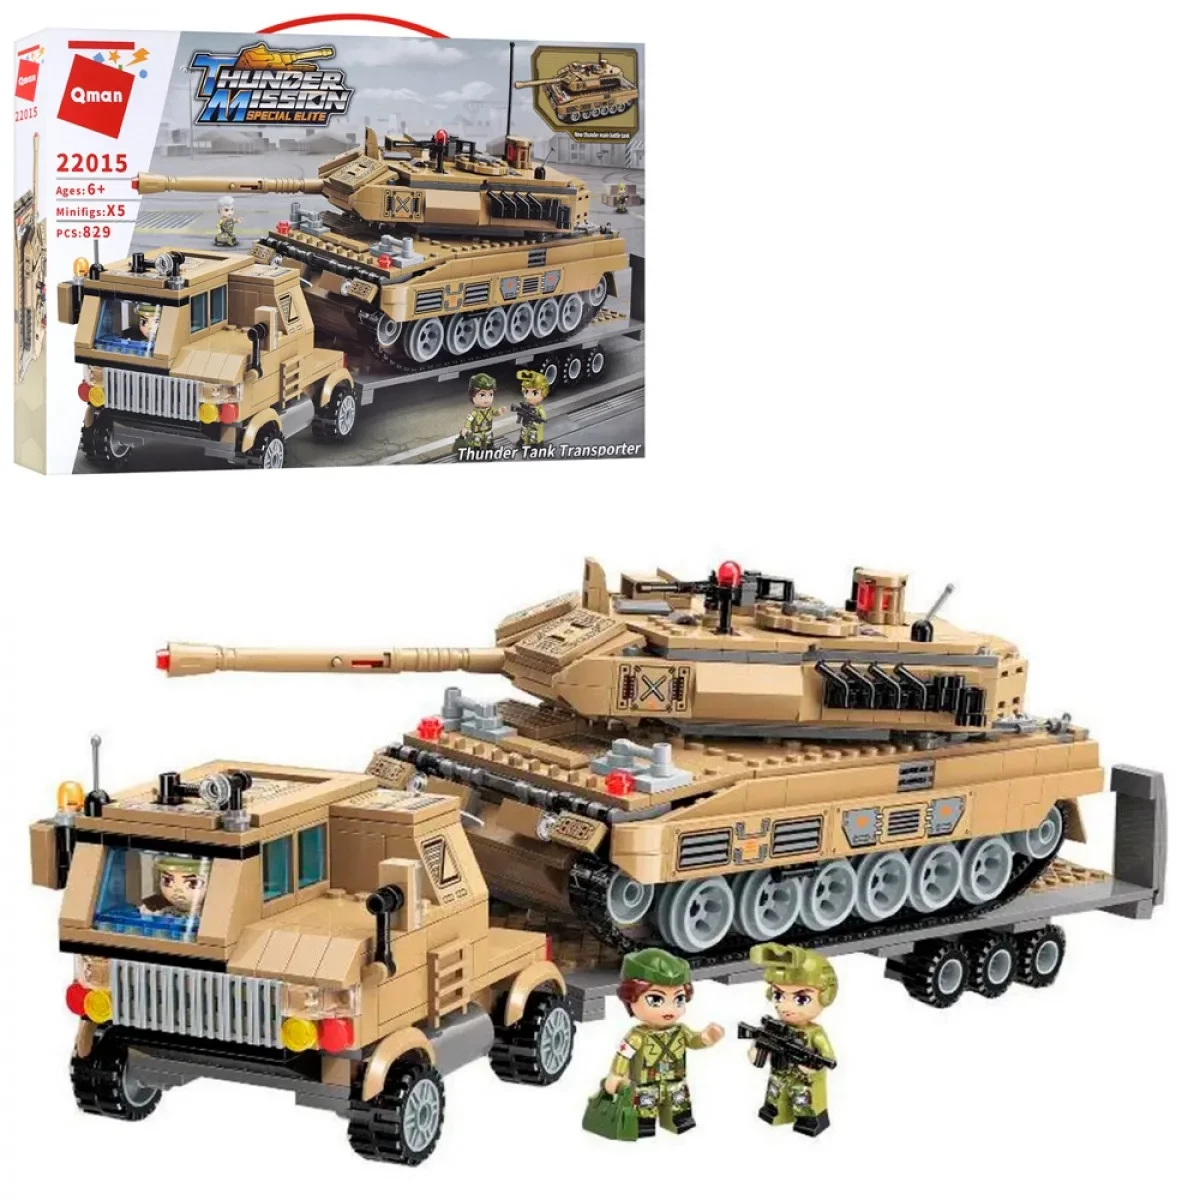 Дитячий конструктор Qman військовий танк і трейлер 829 деталей | Пластмасове Лего для хлопчиків від 6 років, фото 1